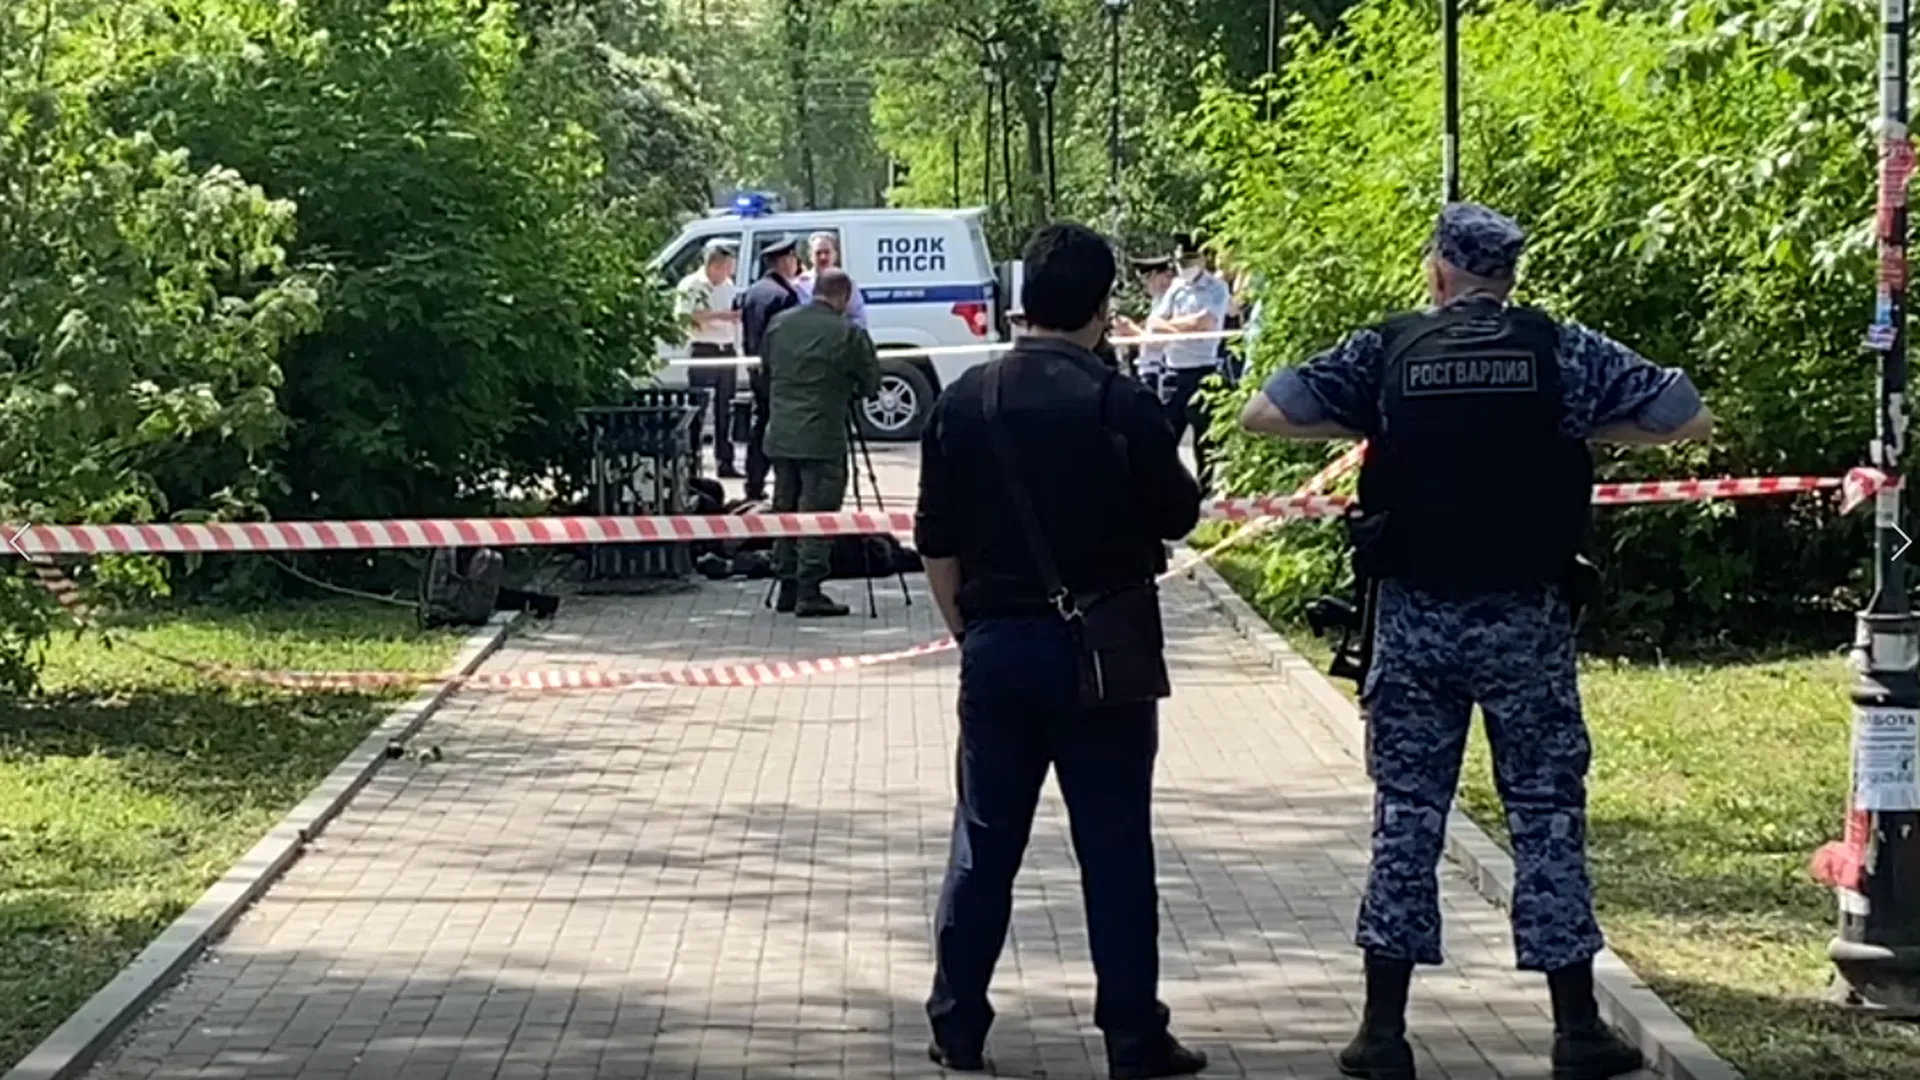 СК подтвердил гибель троих прохожих при нападении в Екатеринбурге